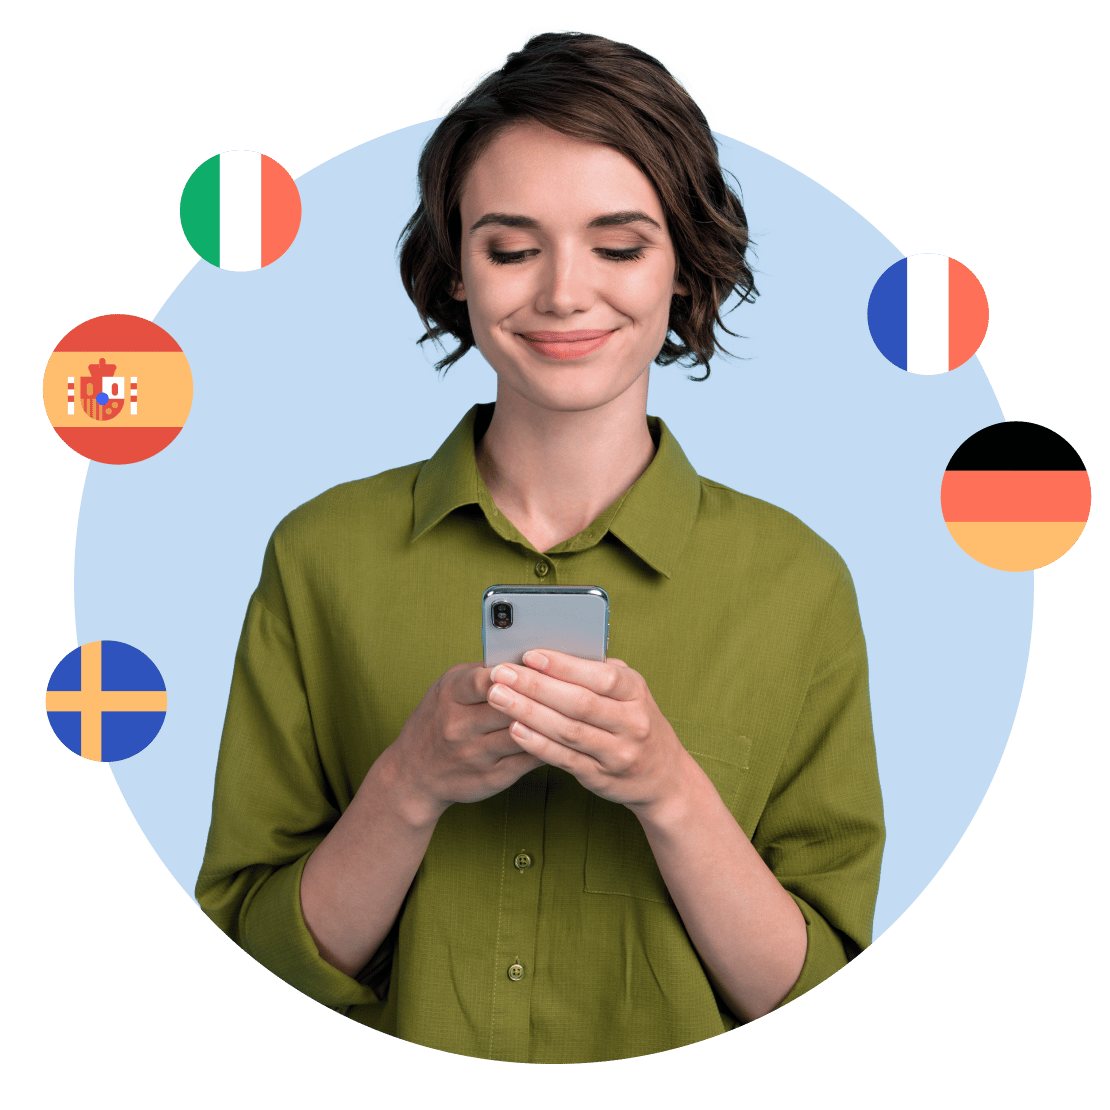 Una donna che impara felicemente diverse lingue su Duolingo con una maggiore privacy grazie a NordVPN.